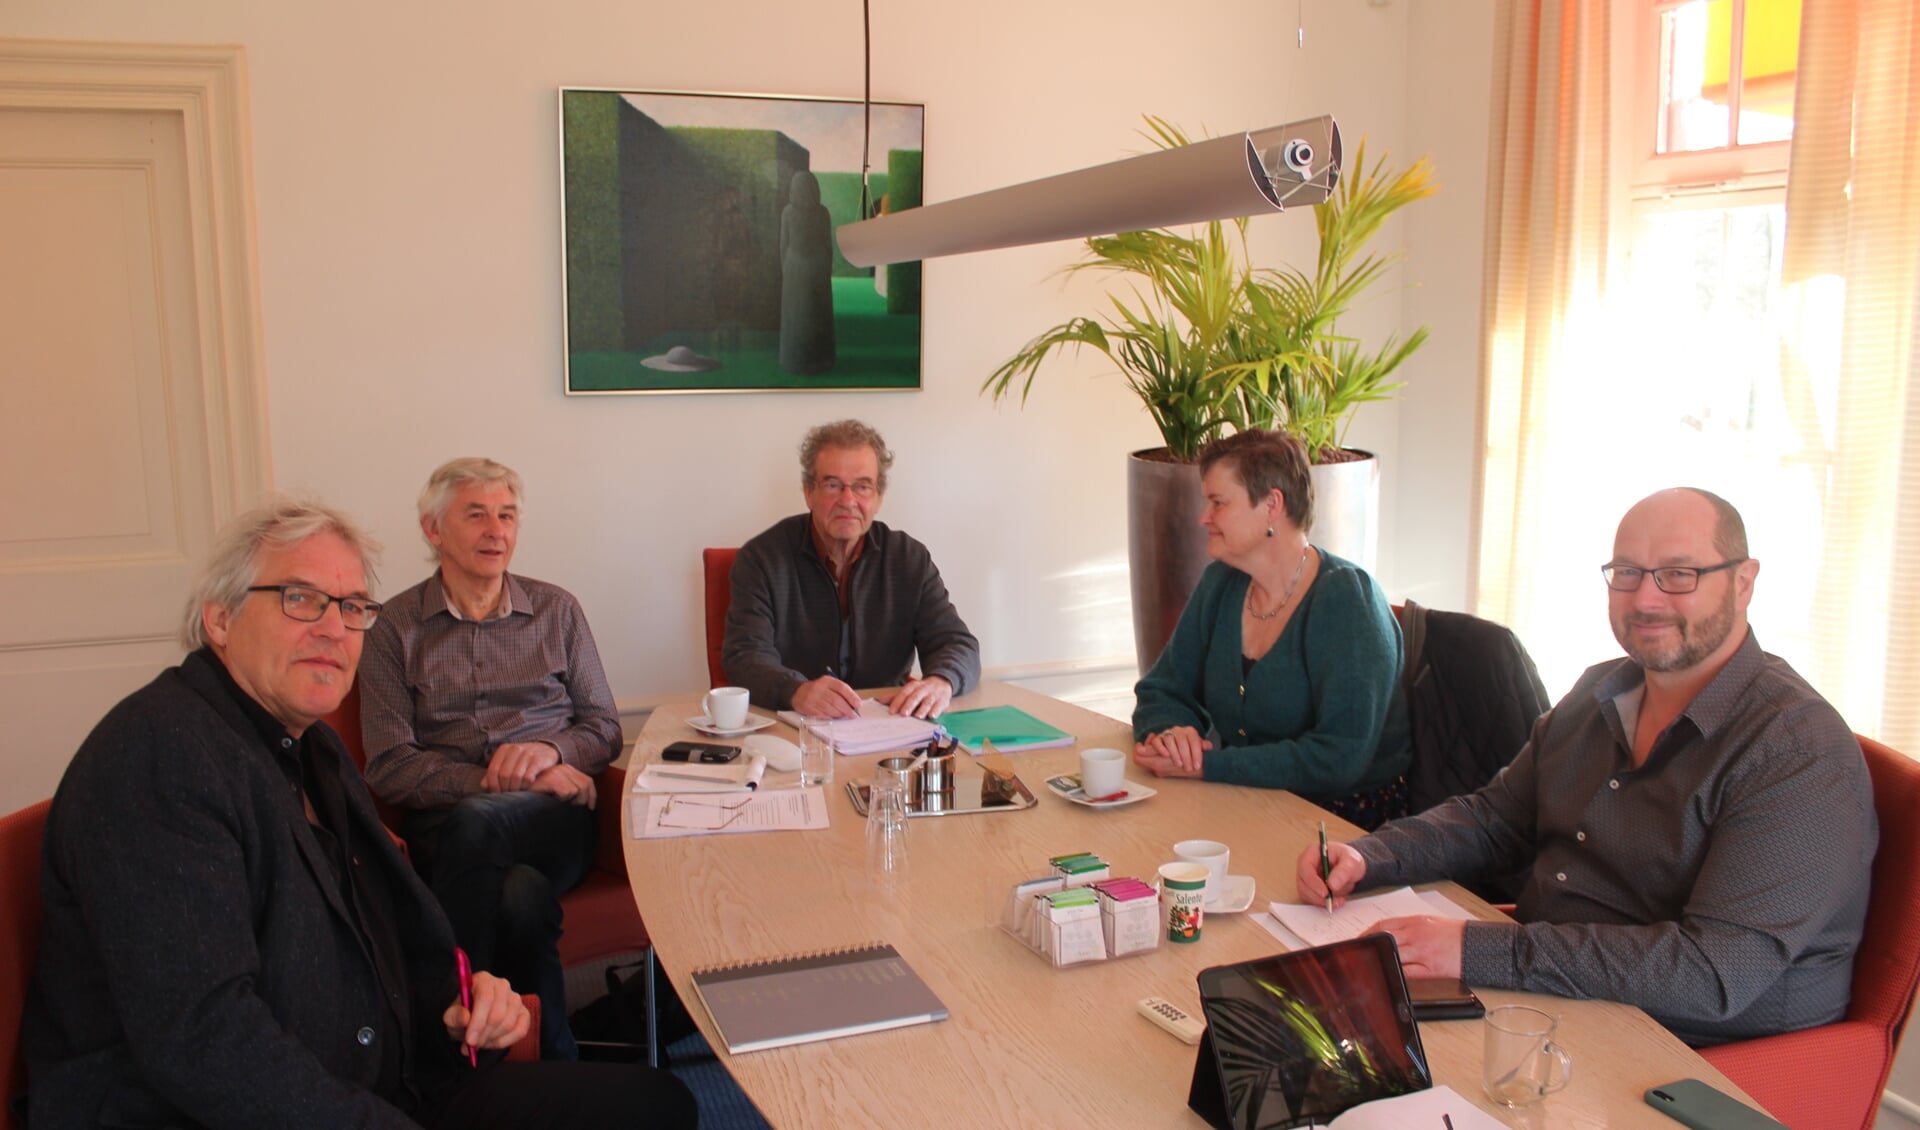 Maandag 7 maart was er een gesprek tussen leden van Wijkraad de Leijen en wethouder Anne Brommersma.